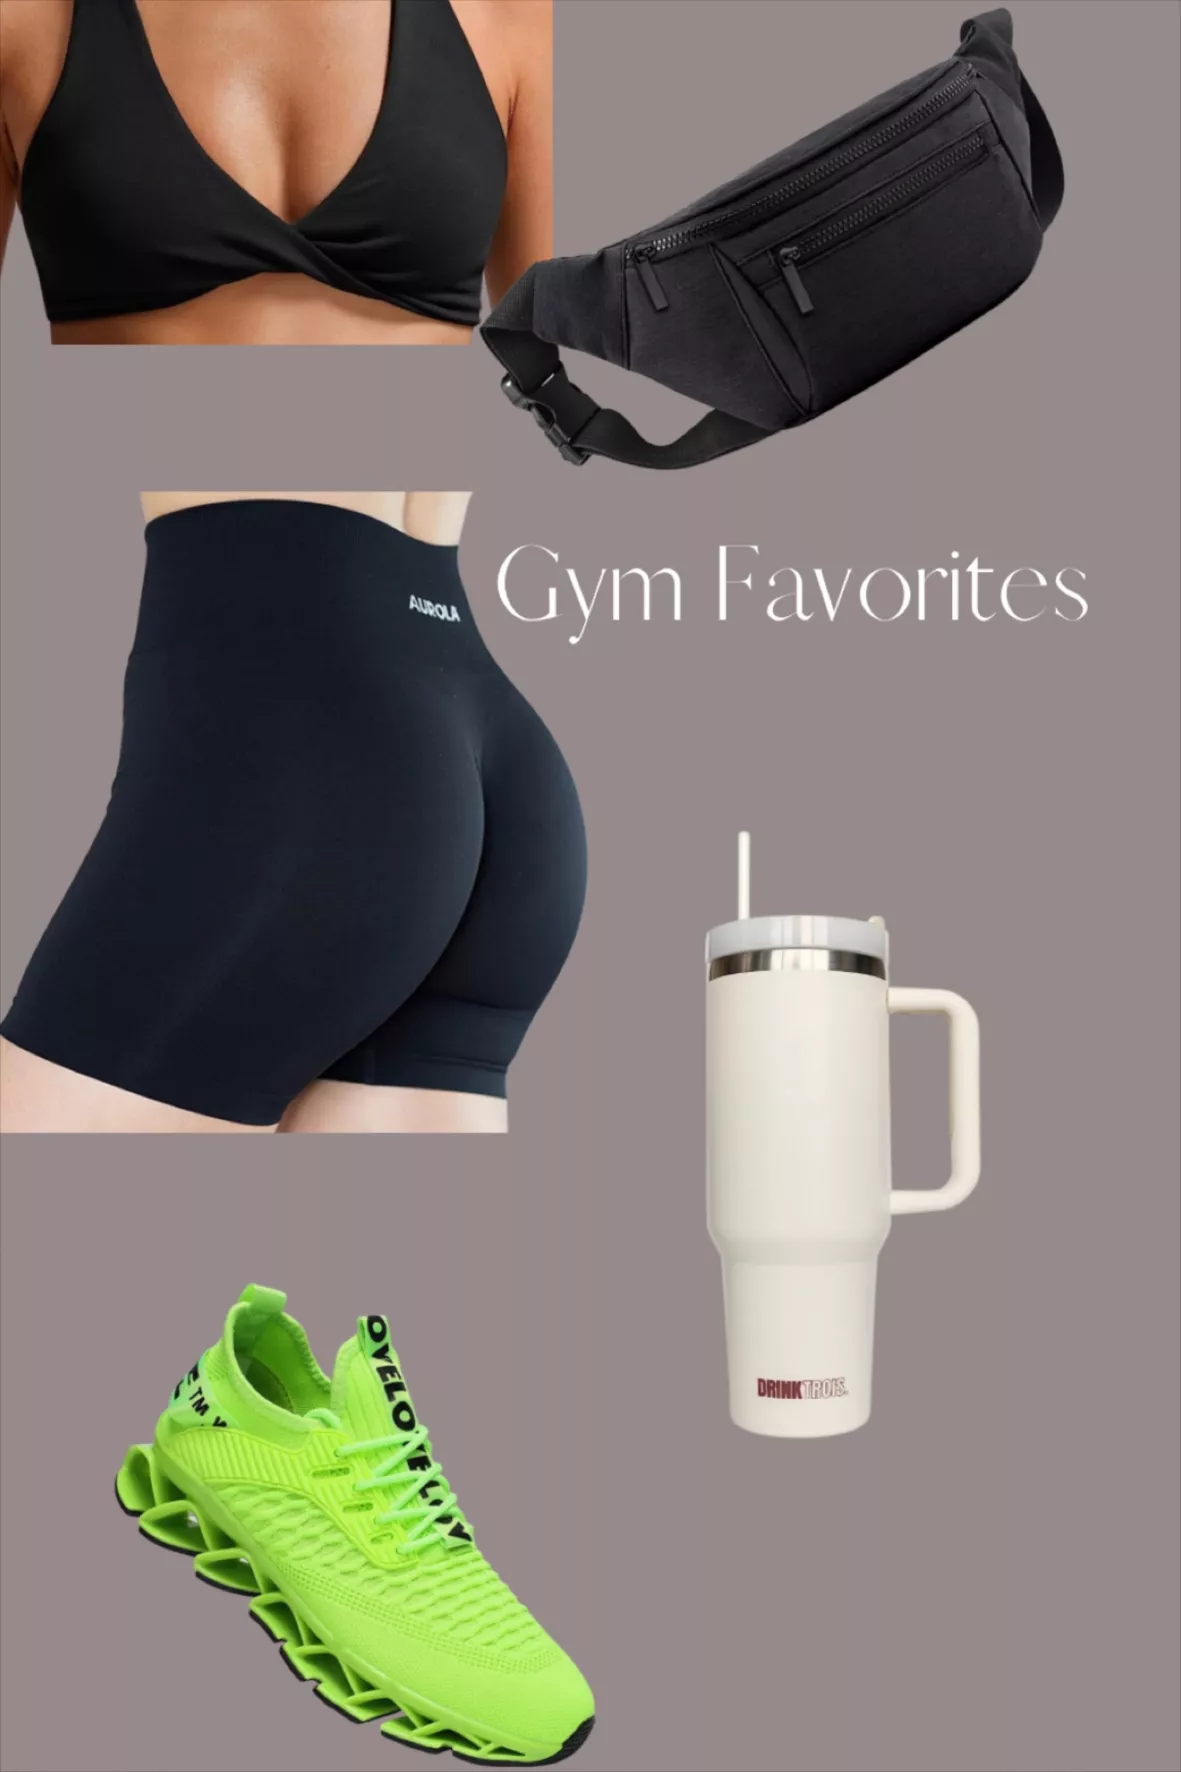 AUROLA Dream Collection Workout Shorts for Women Scrunch Seamless Soft High  Waist Gym Shorts